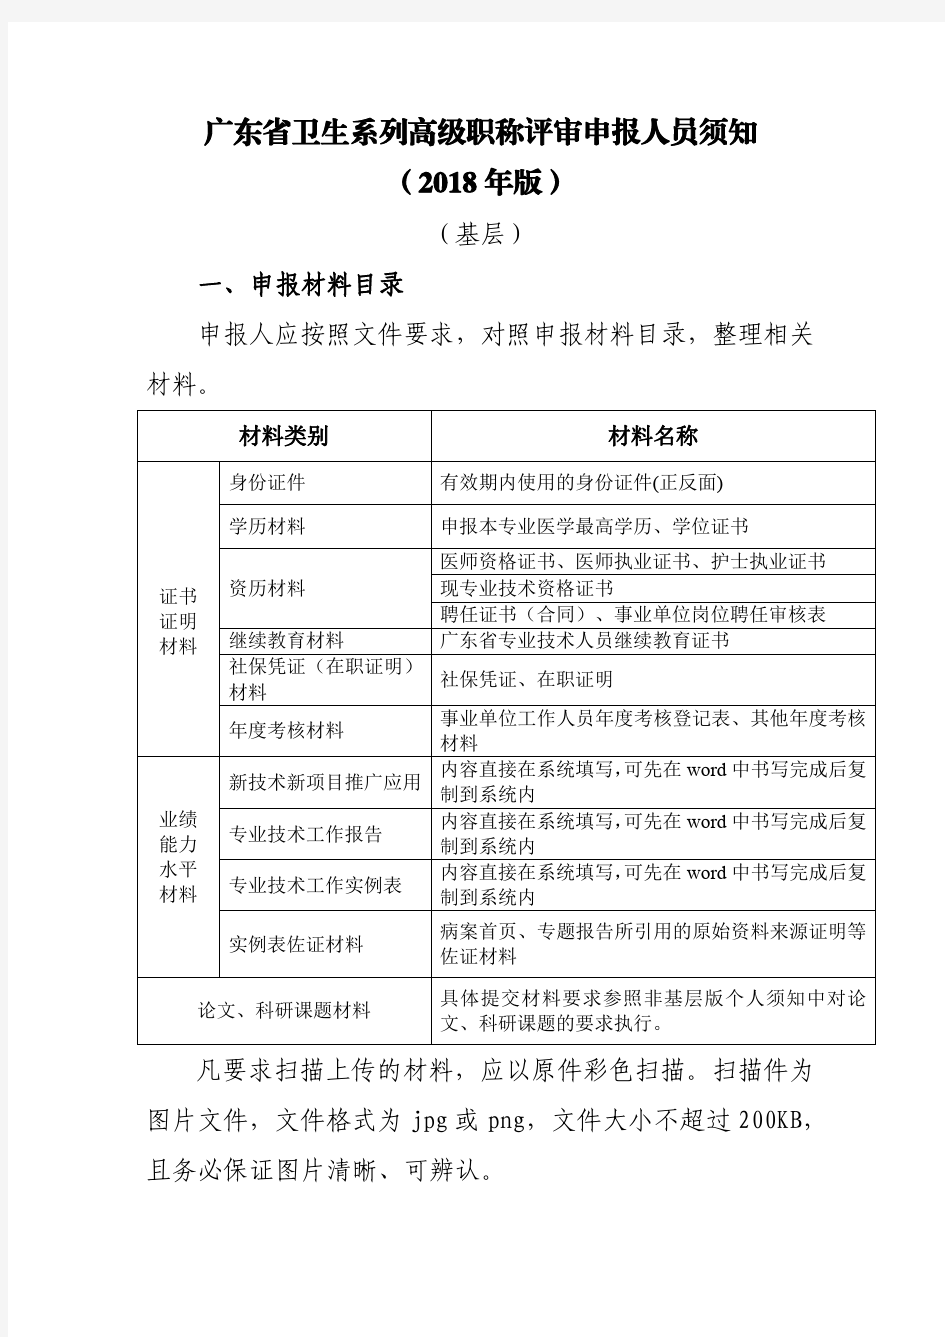 广东卫生系列高级职称评审申报人员须知2018年版